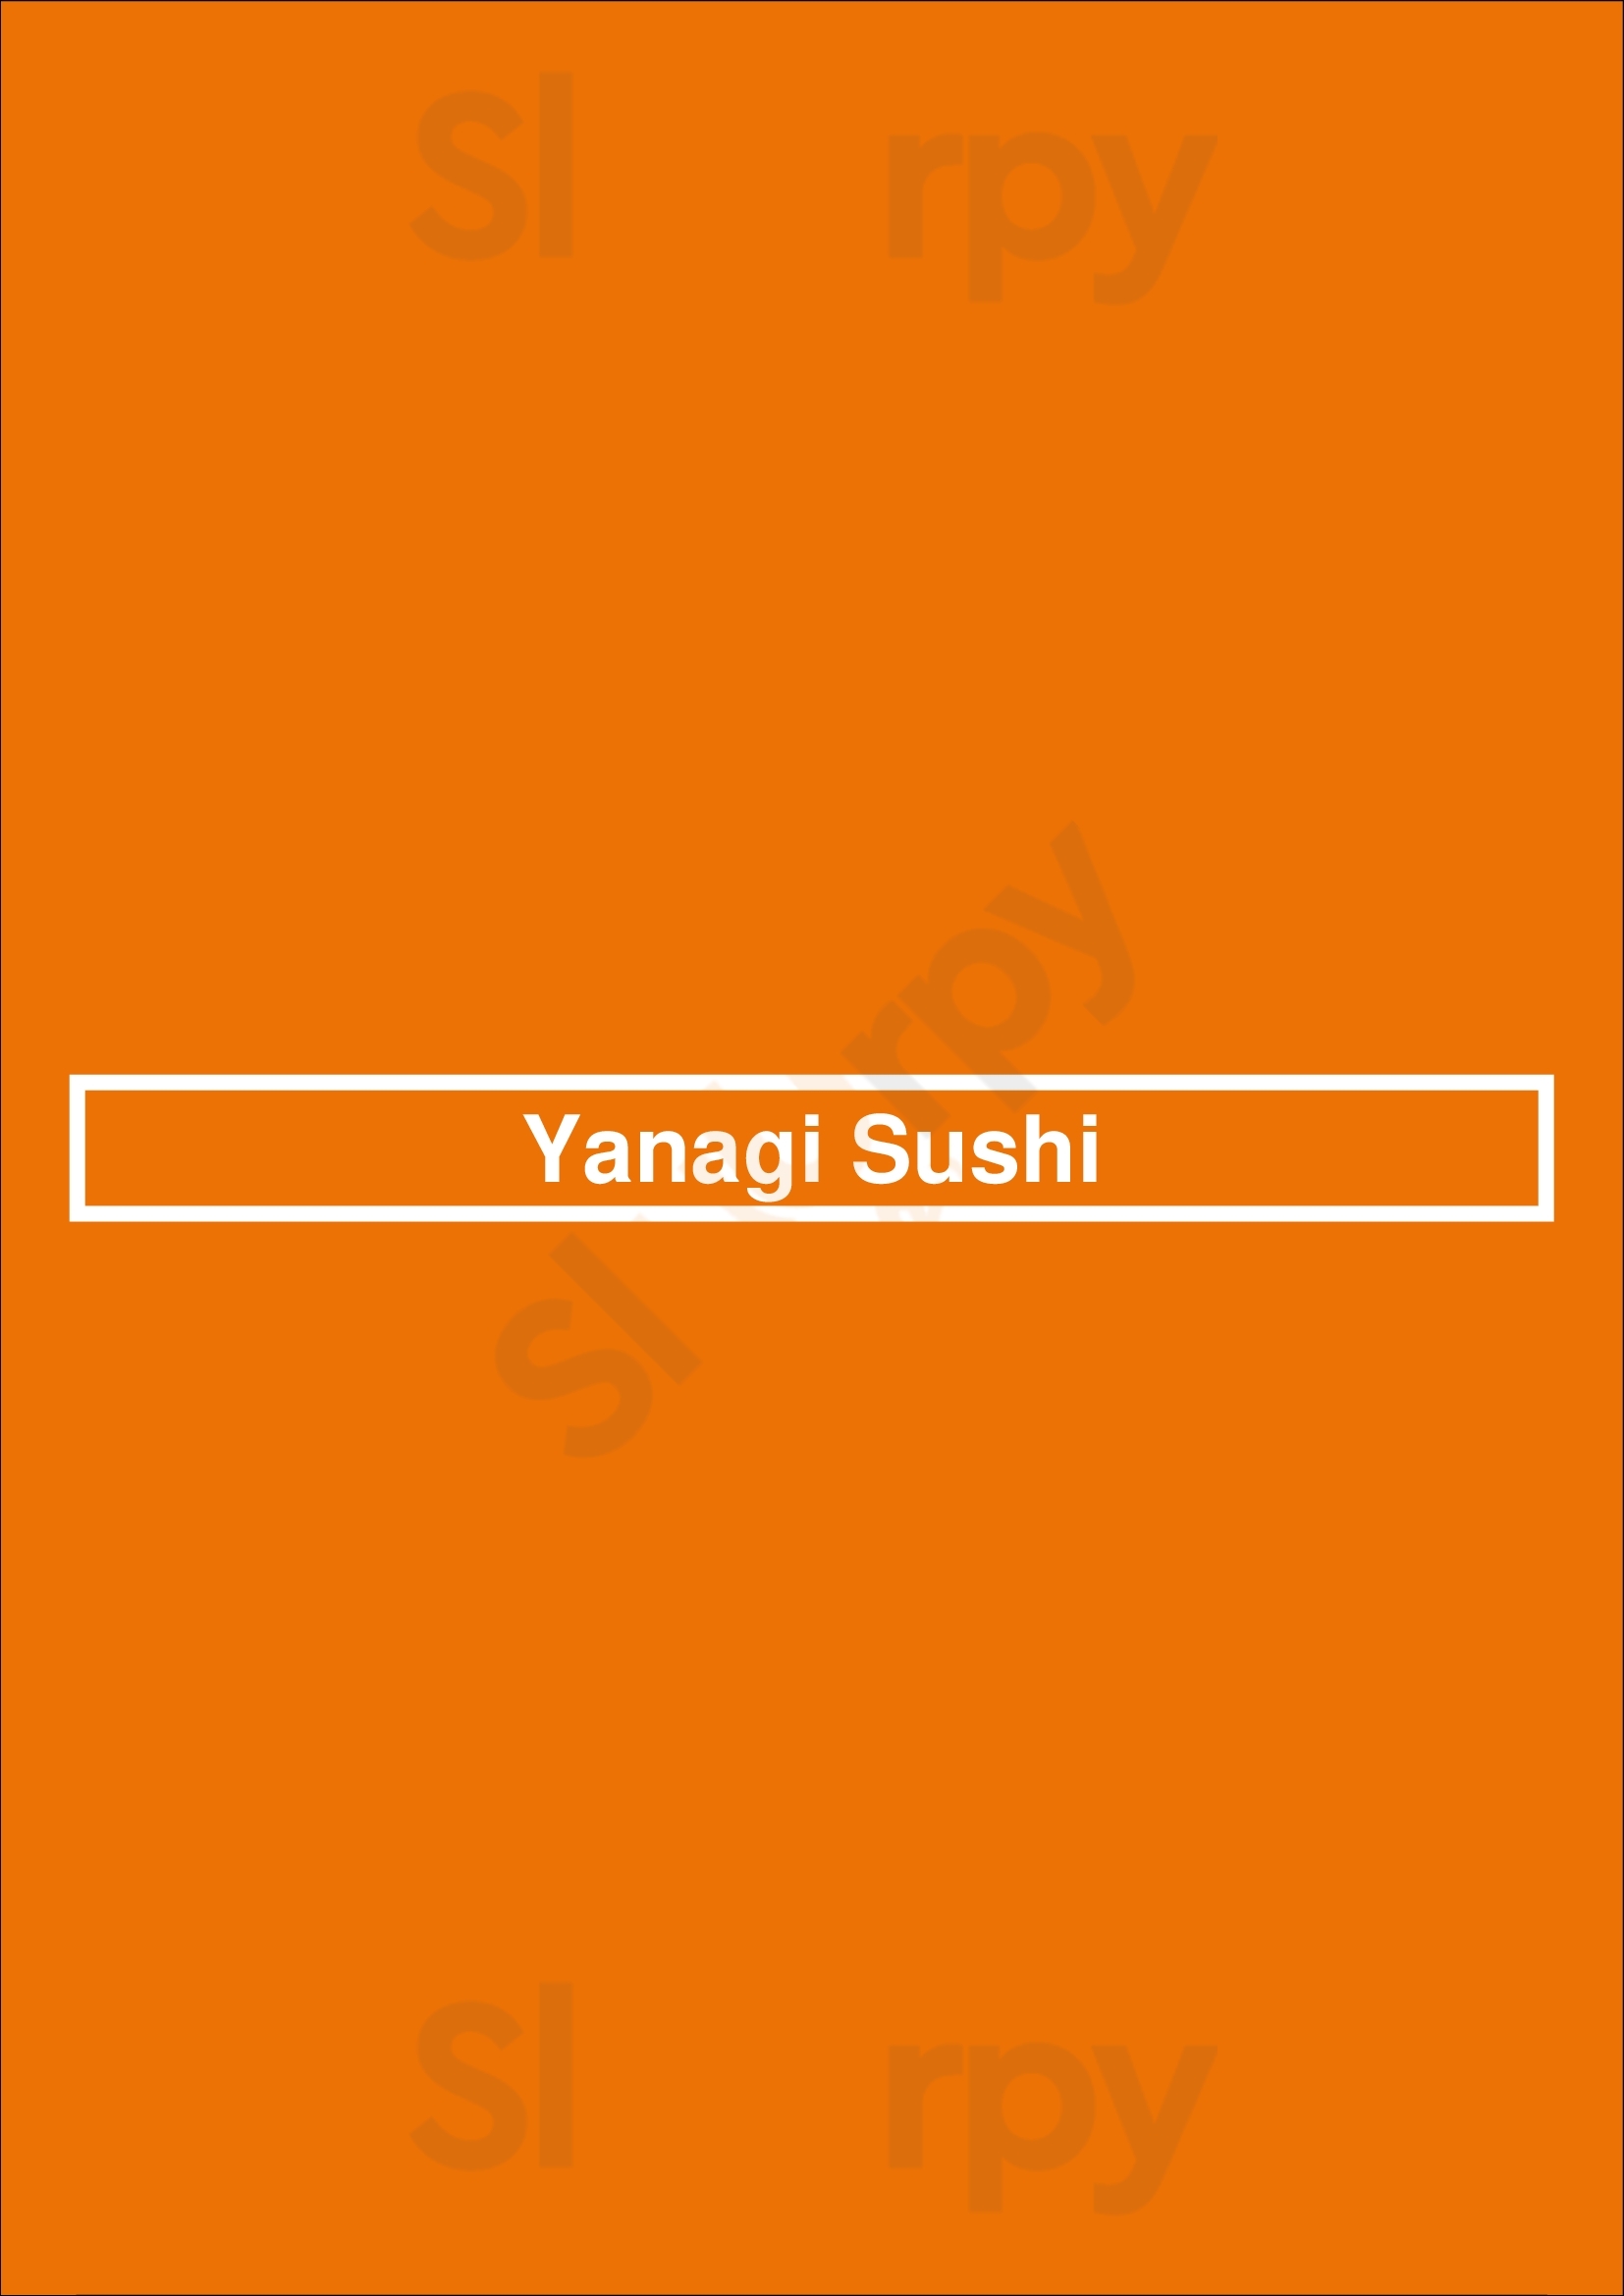 Yanagi Sushi Los Angeles Menu - 1